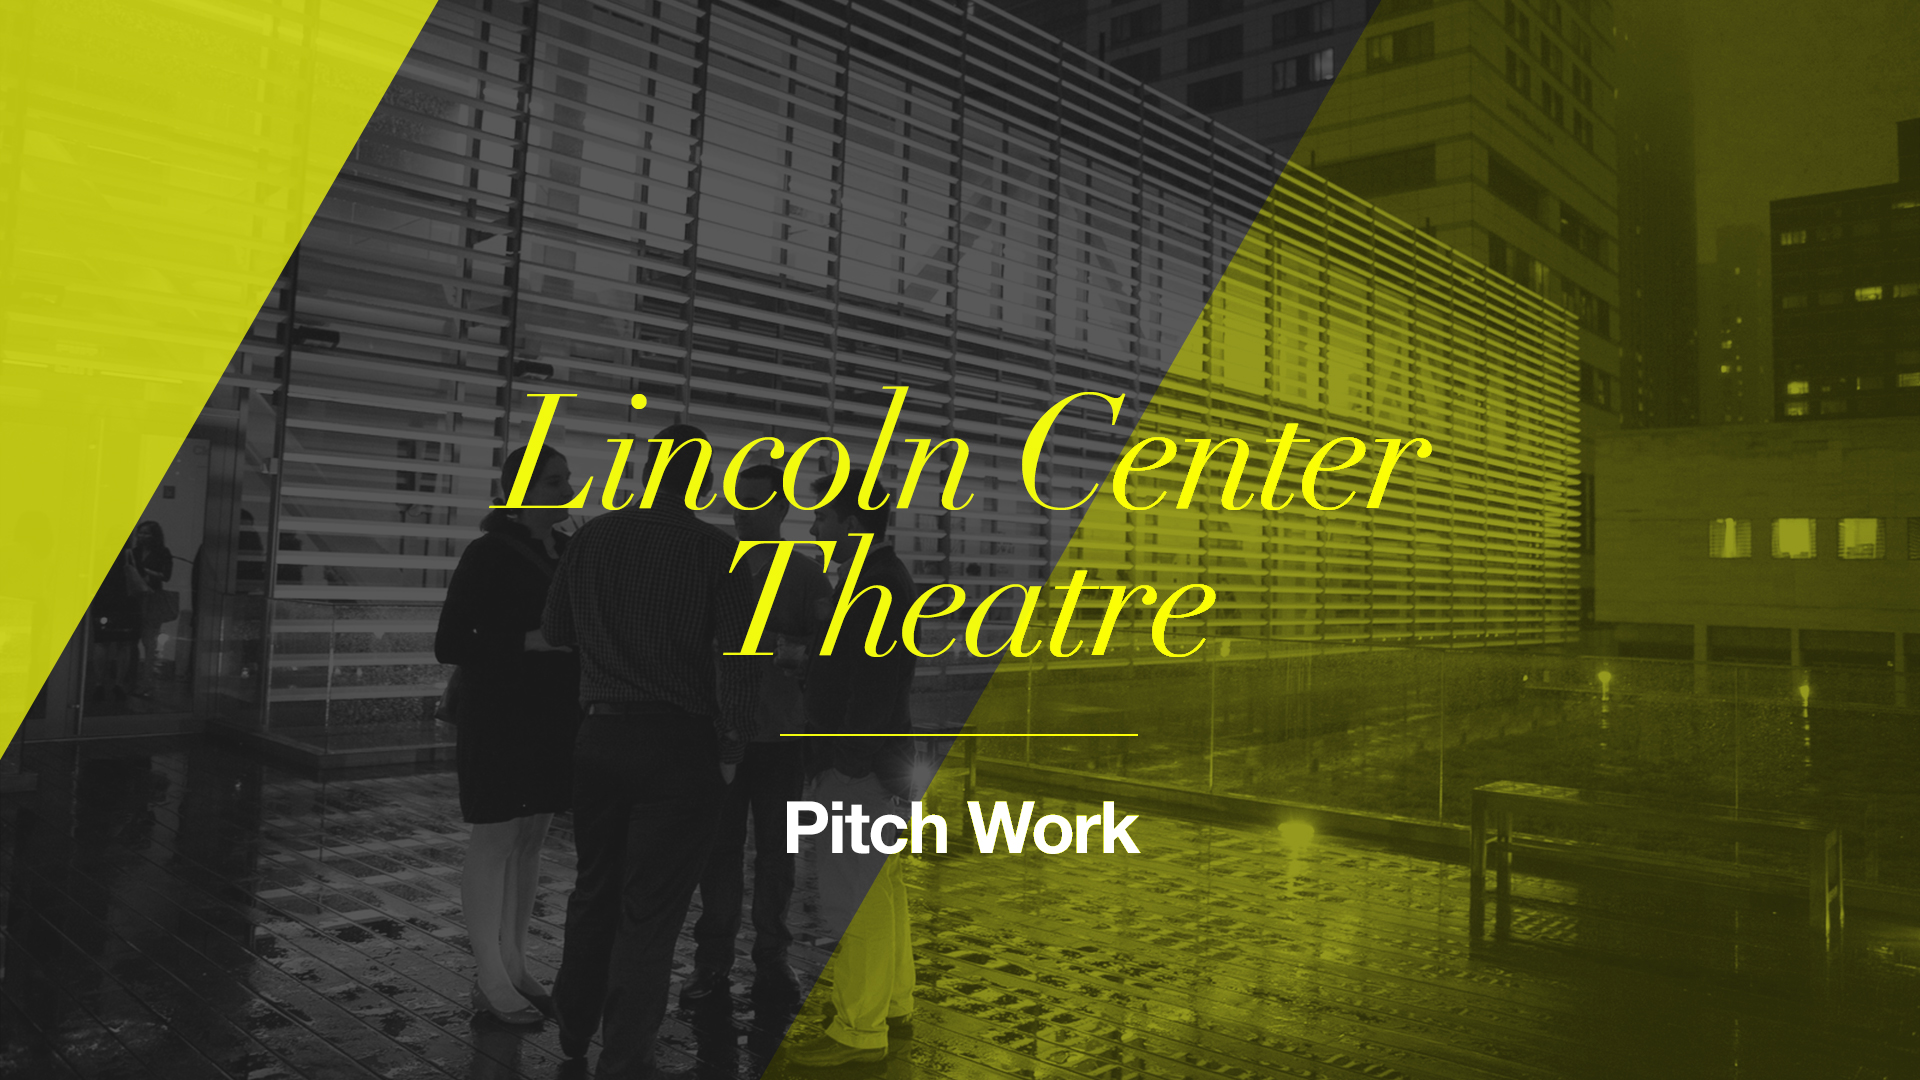 Lincoln Center Theatre: Pitch